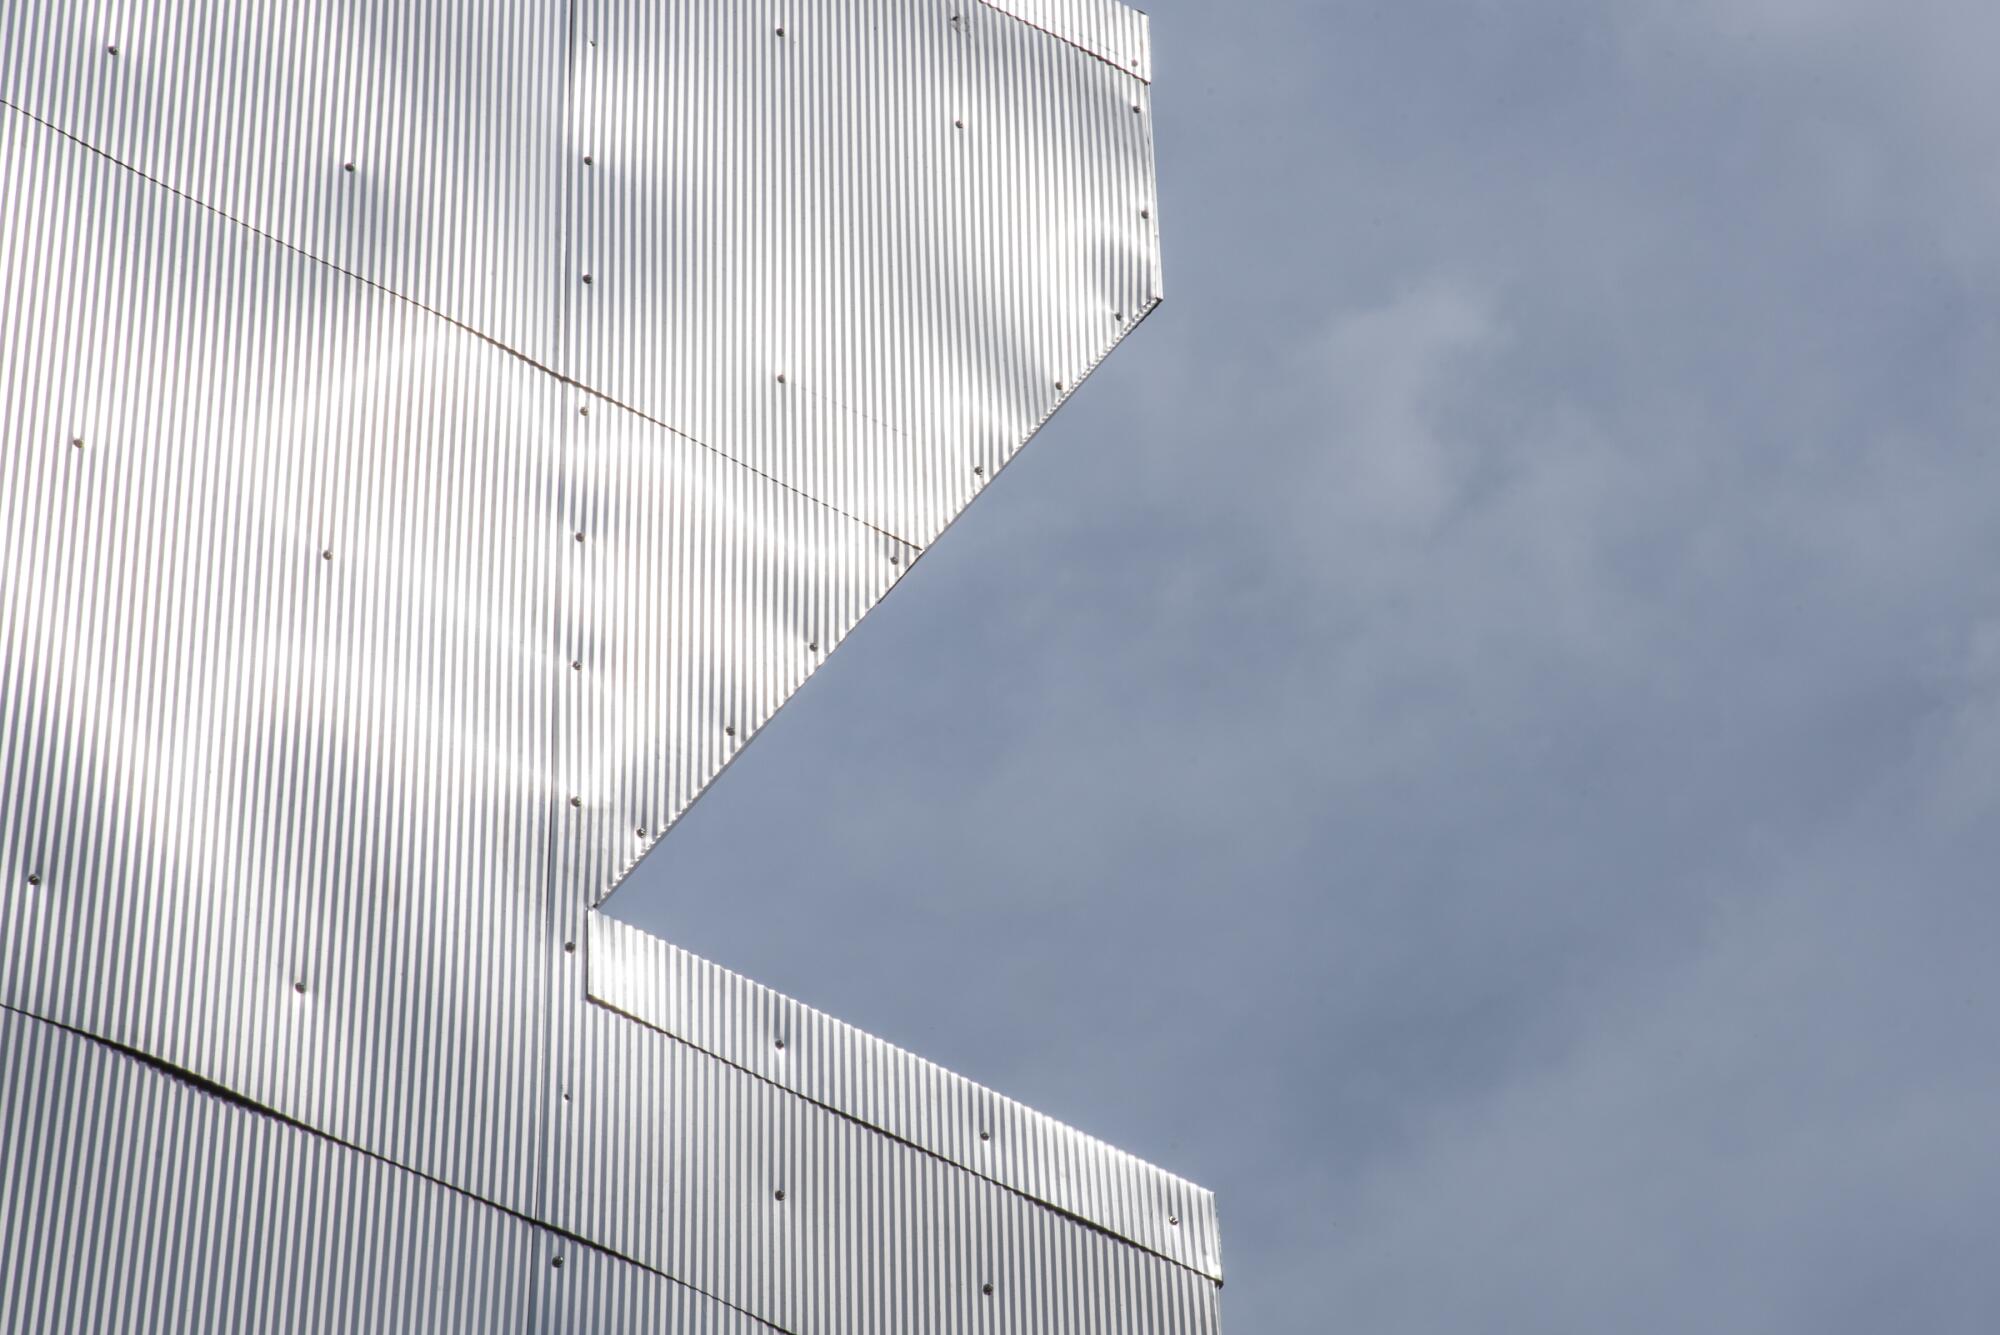 Details of the corrugated metal siding of the Casa de Aluminarias against a blue sky.